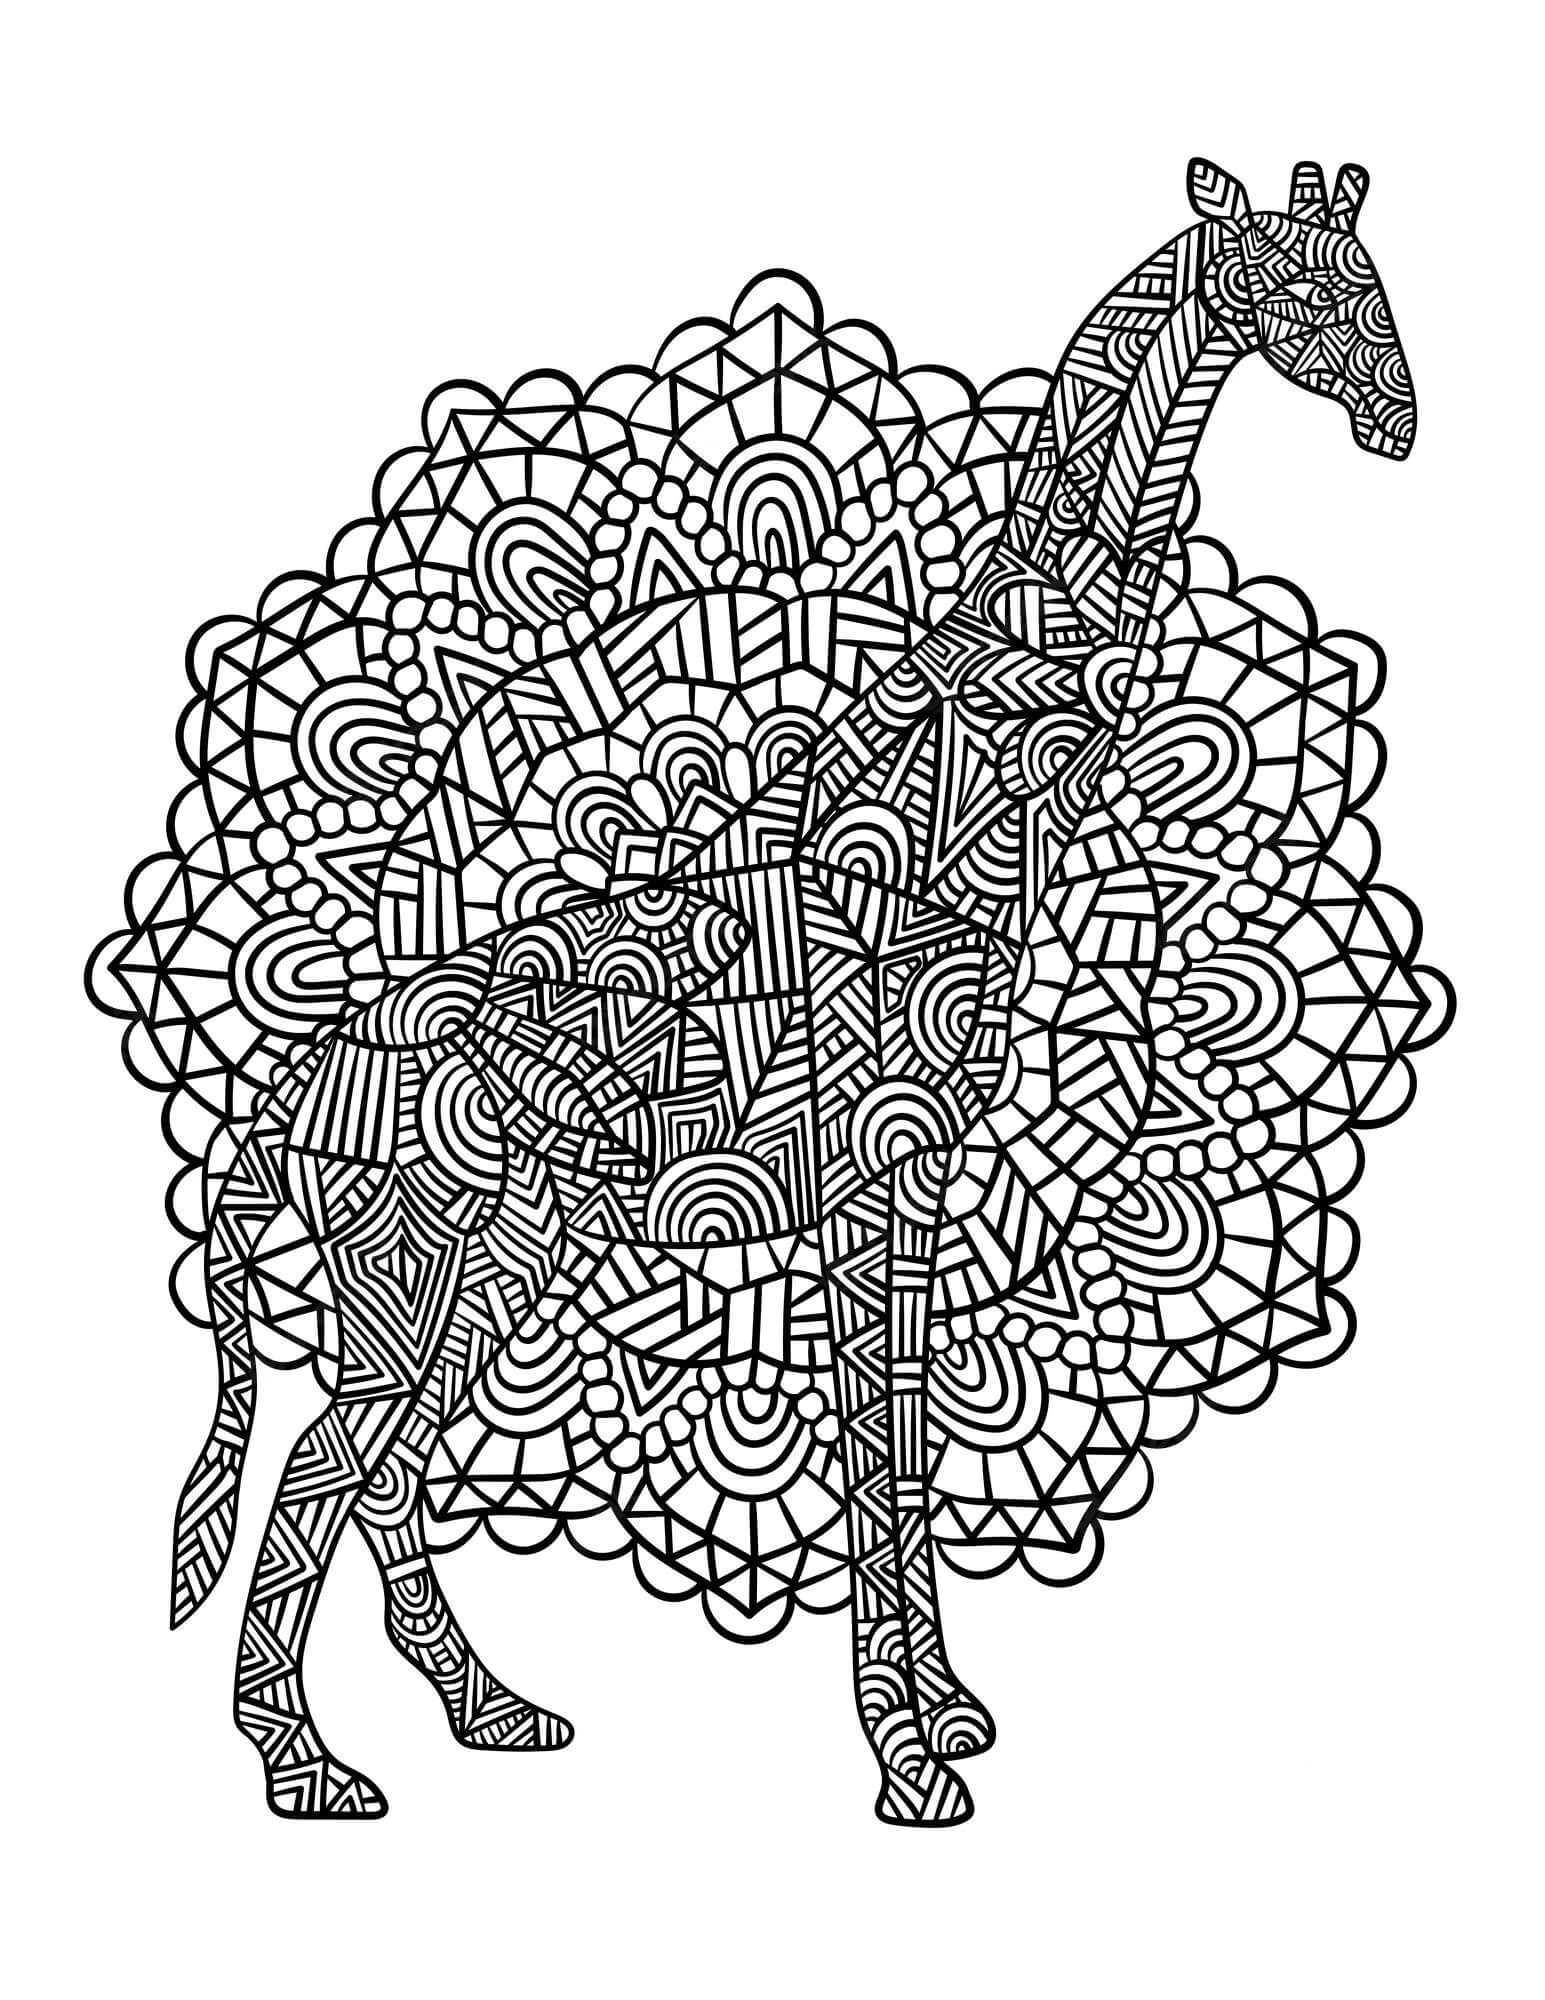 Mandala Giraffe Coloring Page - Sheet 2 Mandalas